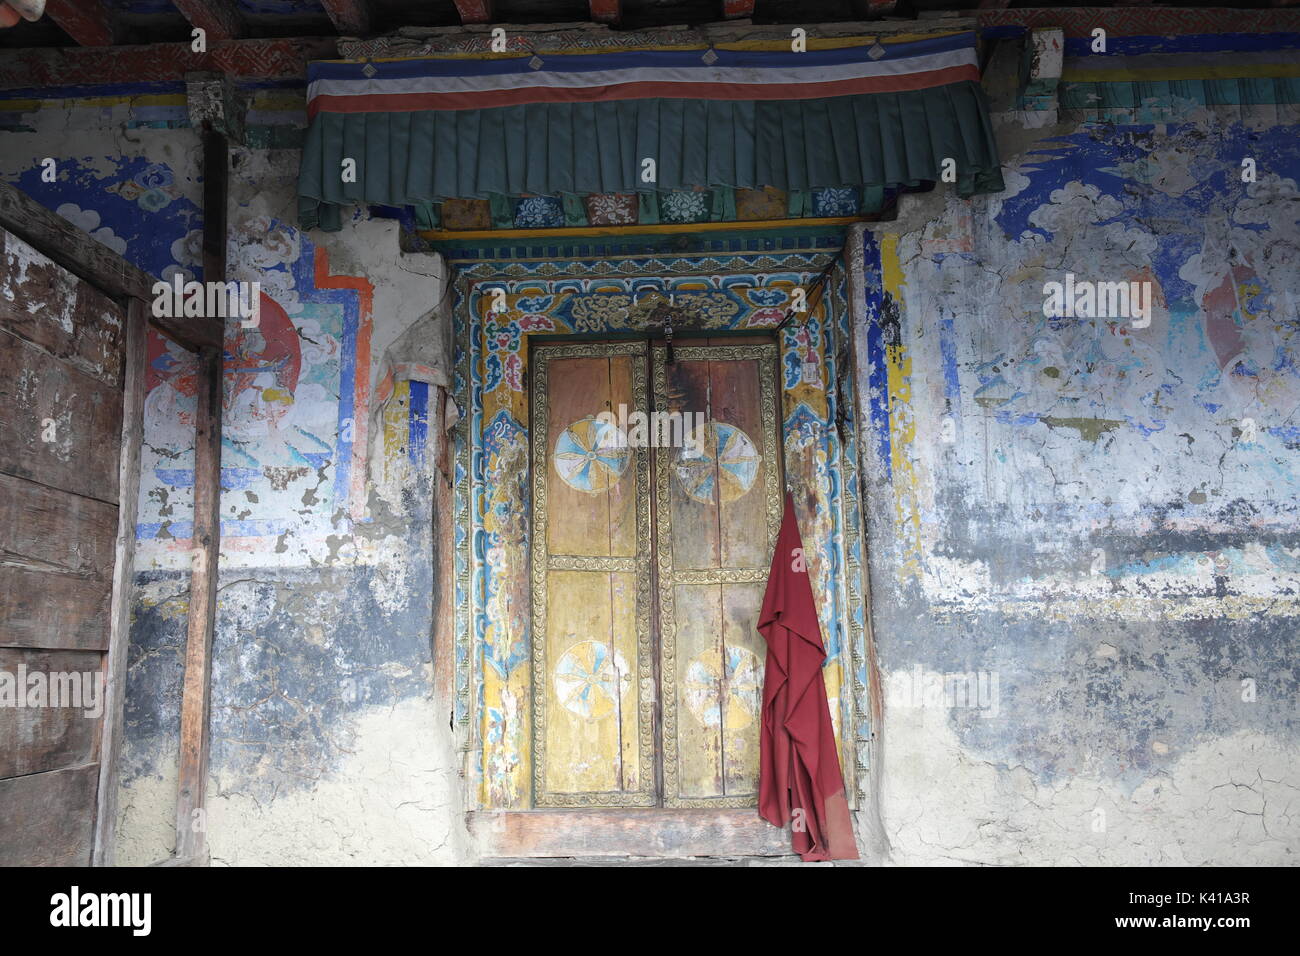 Mönche rote robe hängen an Tür mit tibetischen Kunst Malerei an mu gompa Kloster, Nepal auf der tibetischen Grenze in der abgelegenen Region tsum Valley Stockfoto